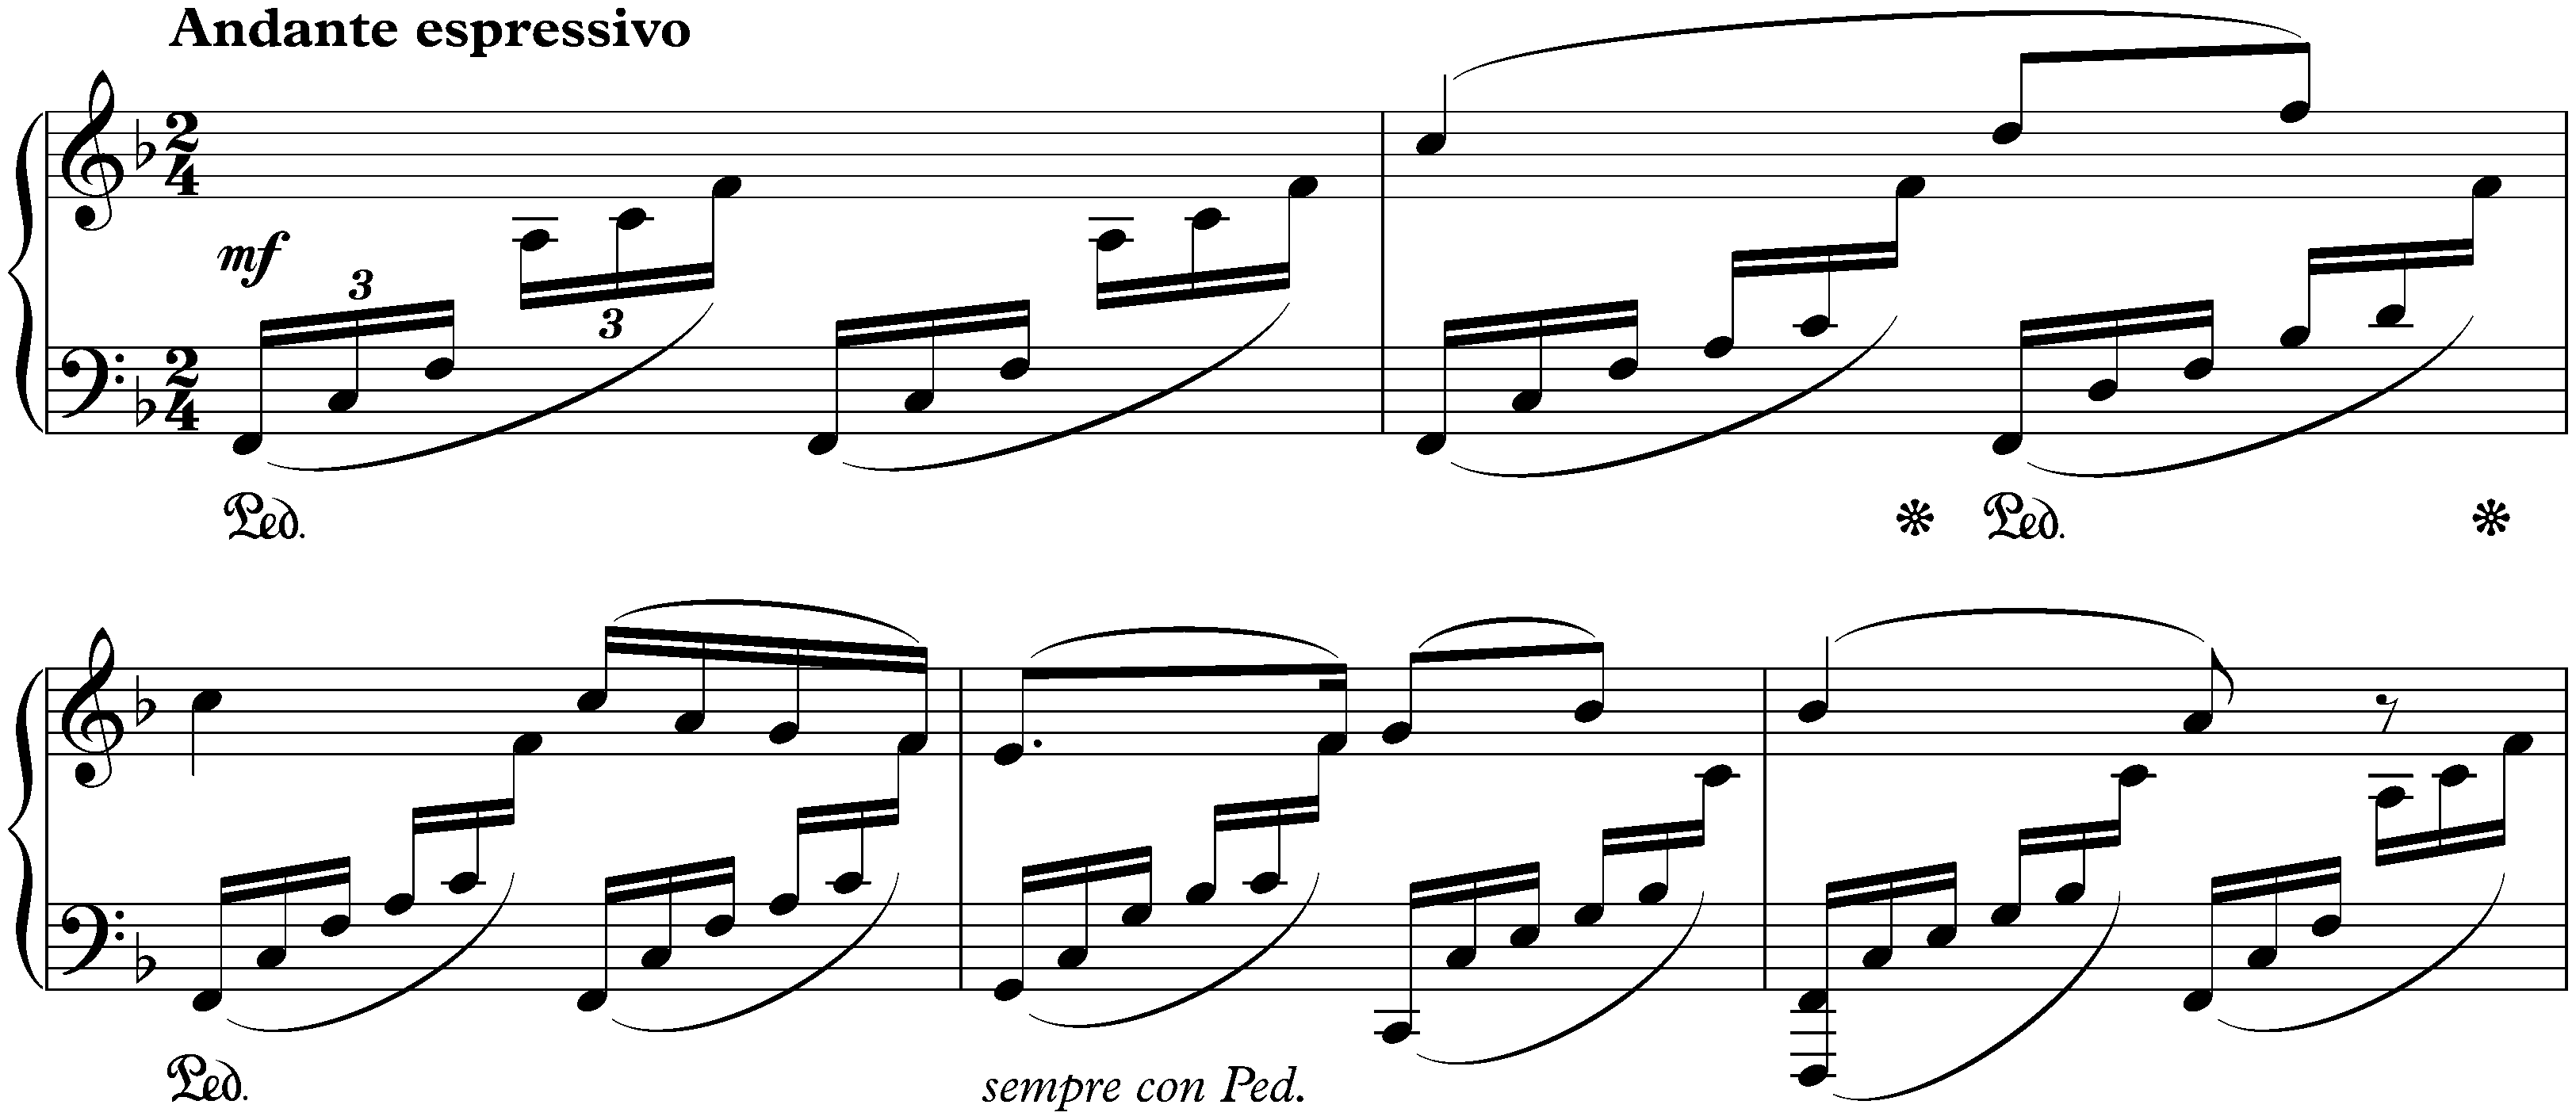 Lieder ohne Worte, Book 7, op. 85; 1. F major